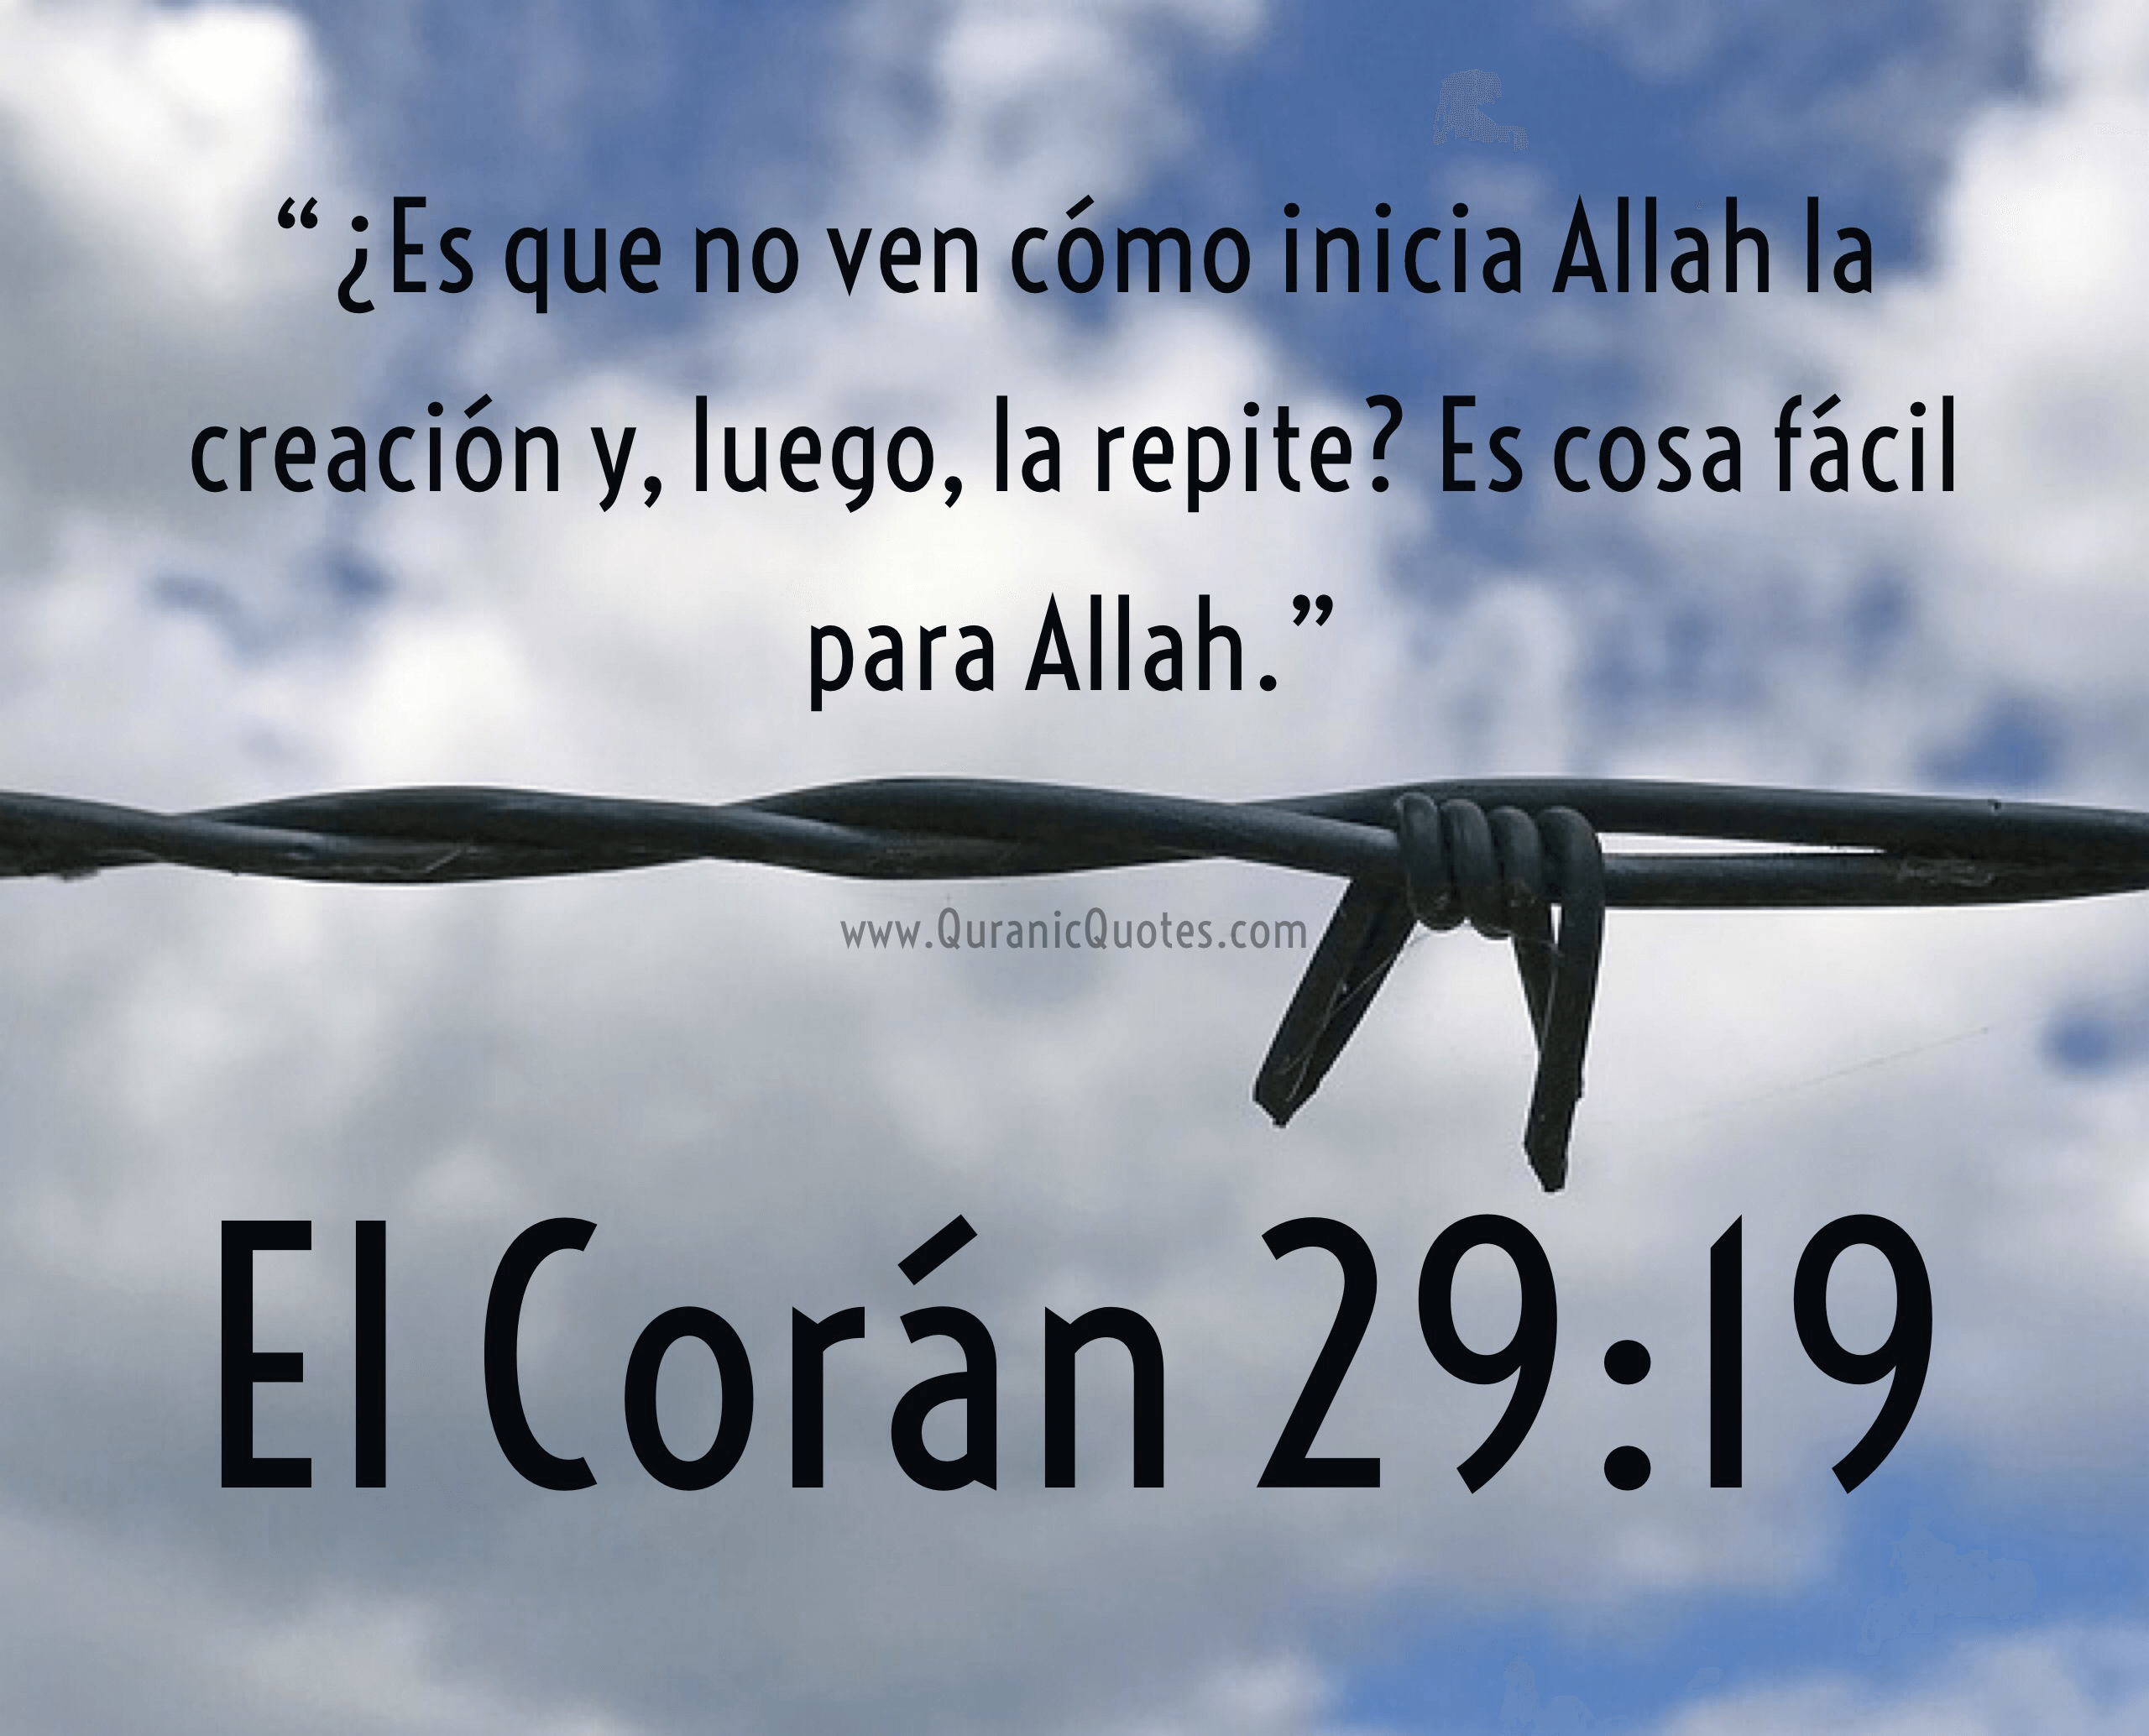 Quranic Quotes Español #129